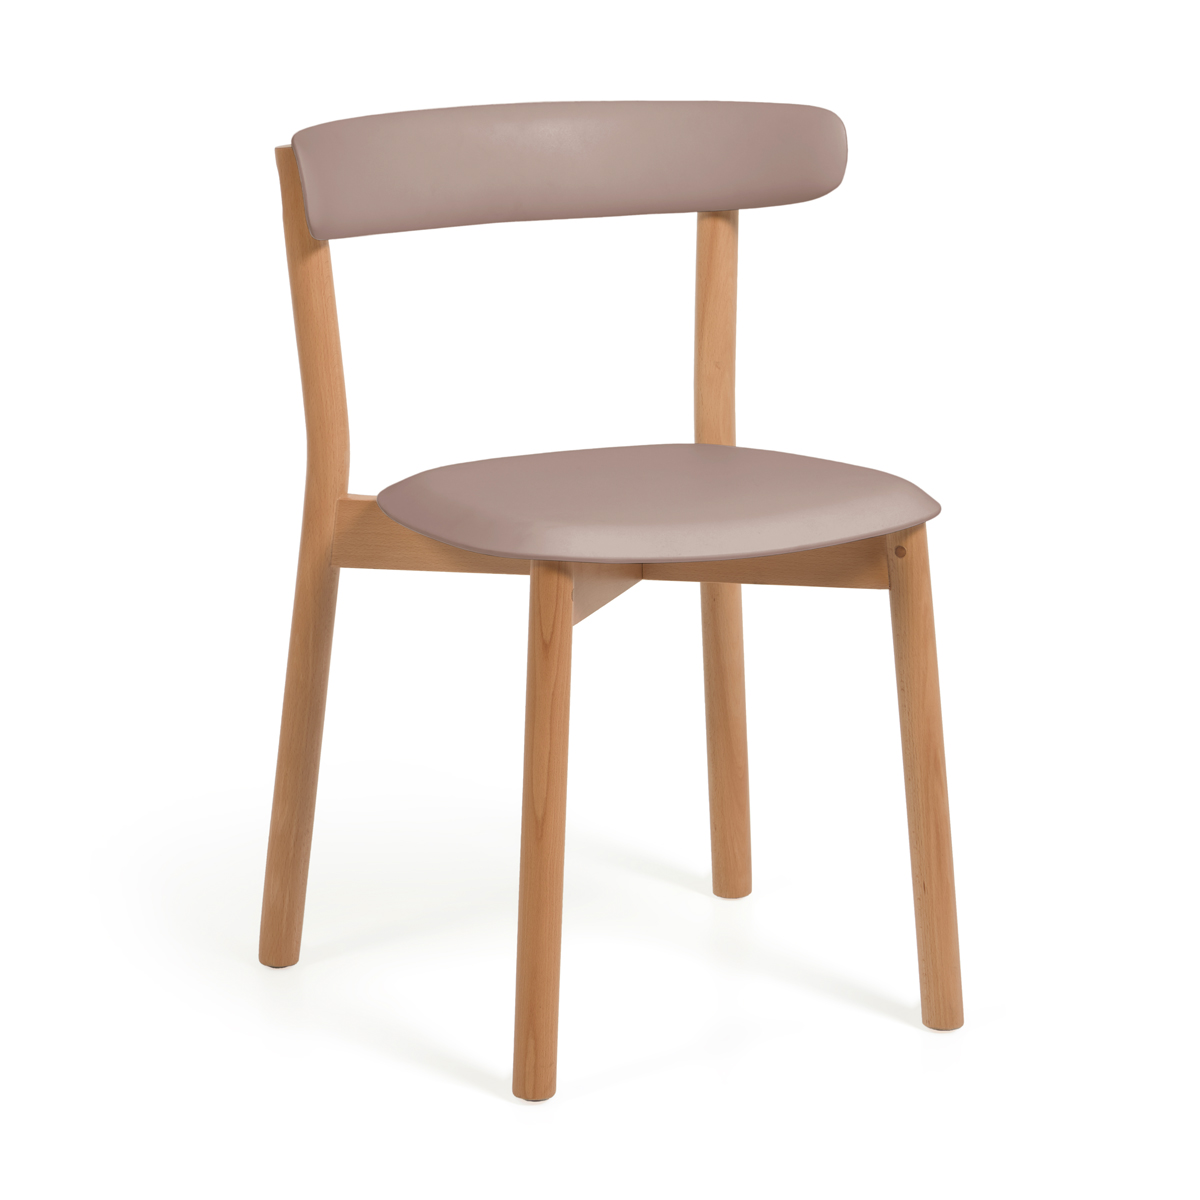 Design stoel hout en kunststof